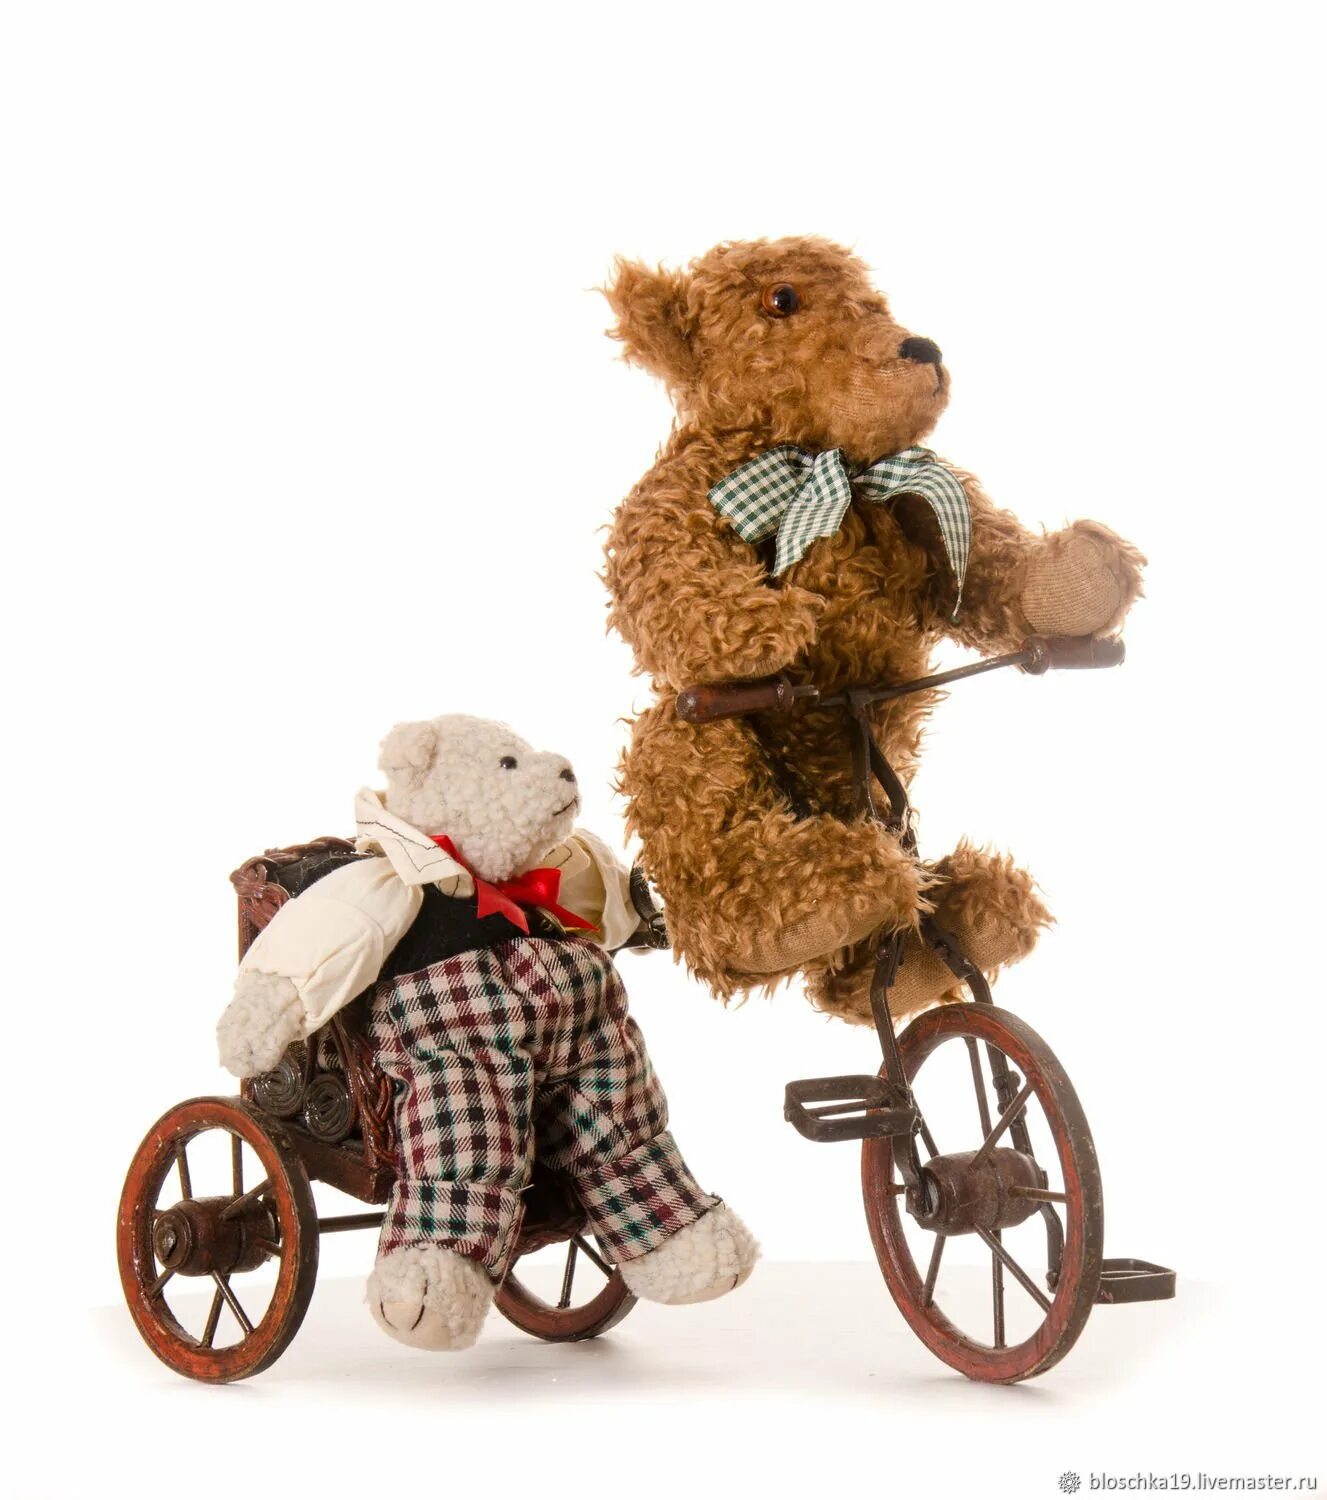 Велосипед Медвежонок. Велосипед Мишутка. Мишка на велосипеде игрушка. Медведь на велосипеде игрушечный.